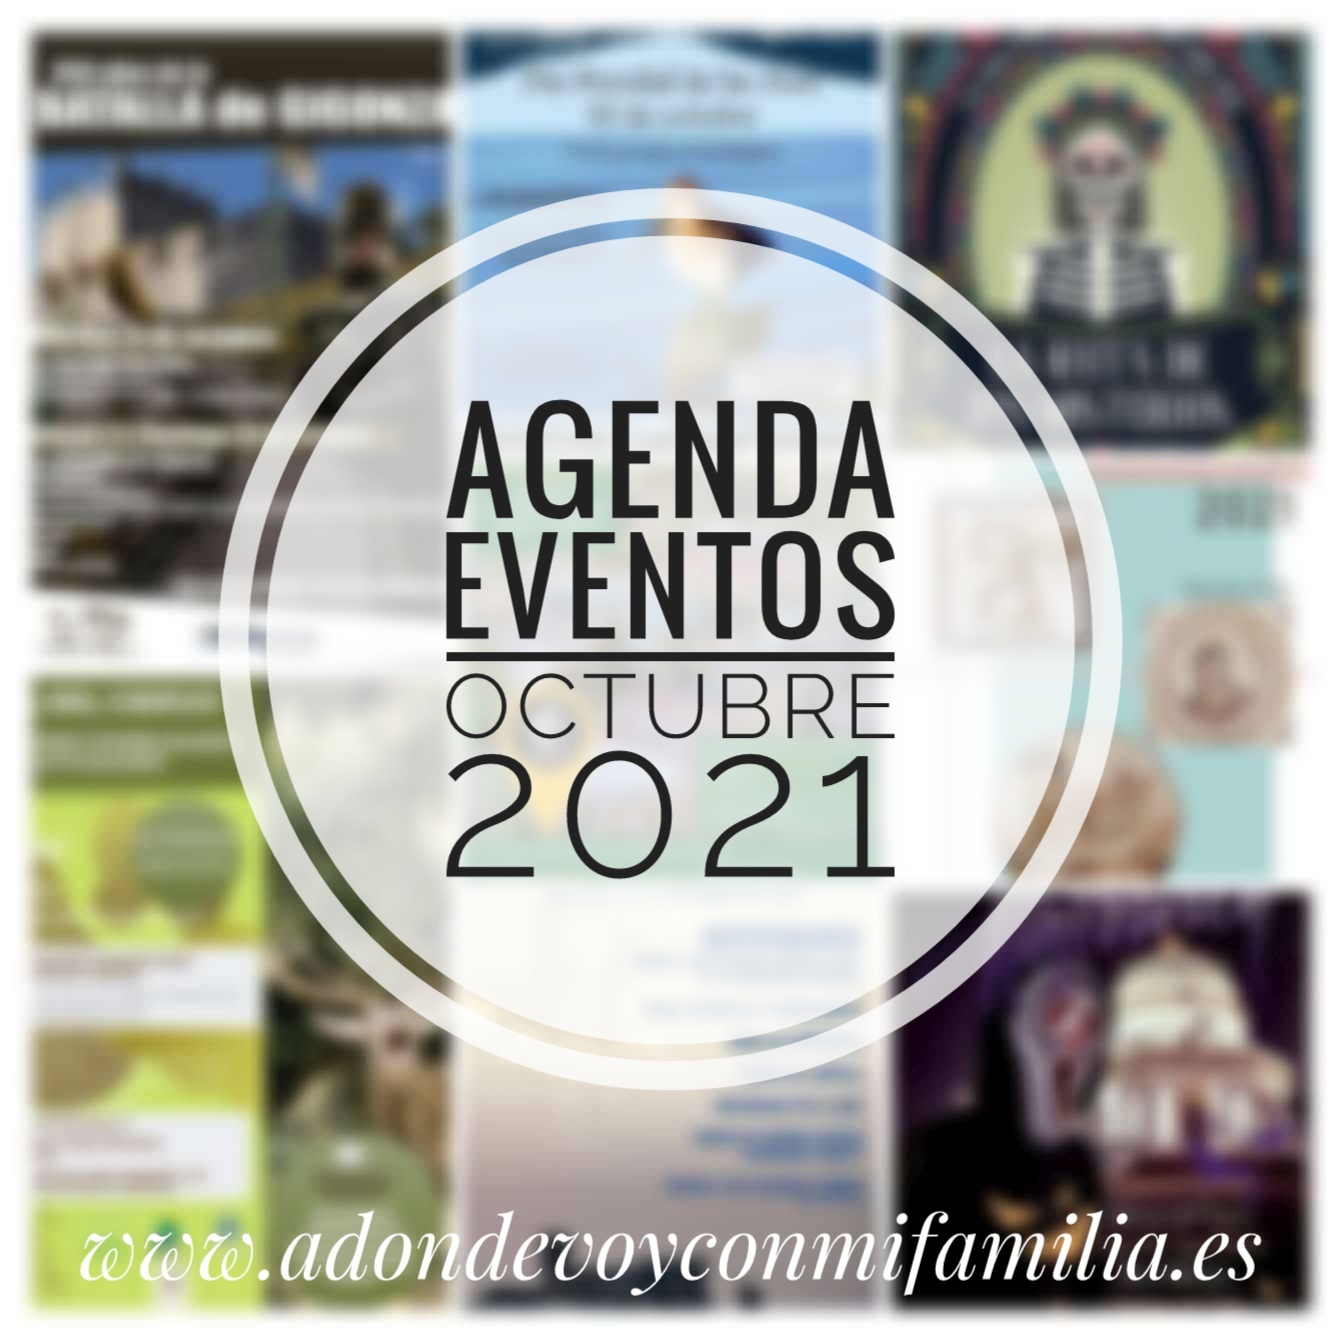 agenda eventos octubre 2021 adondevoyconmifamilia portada_2